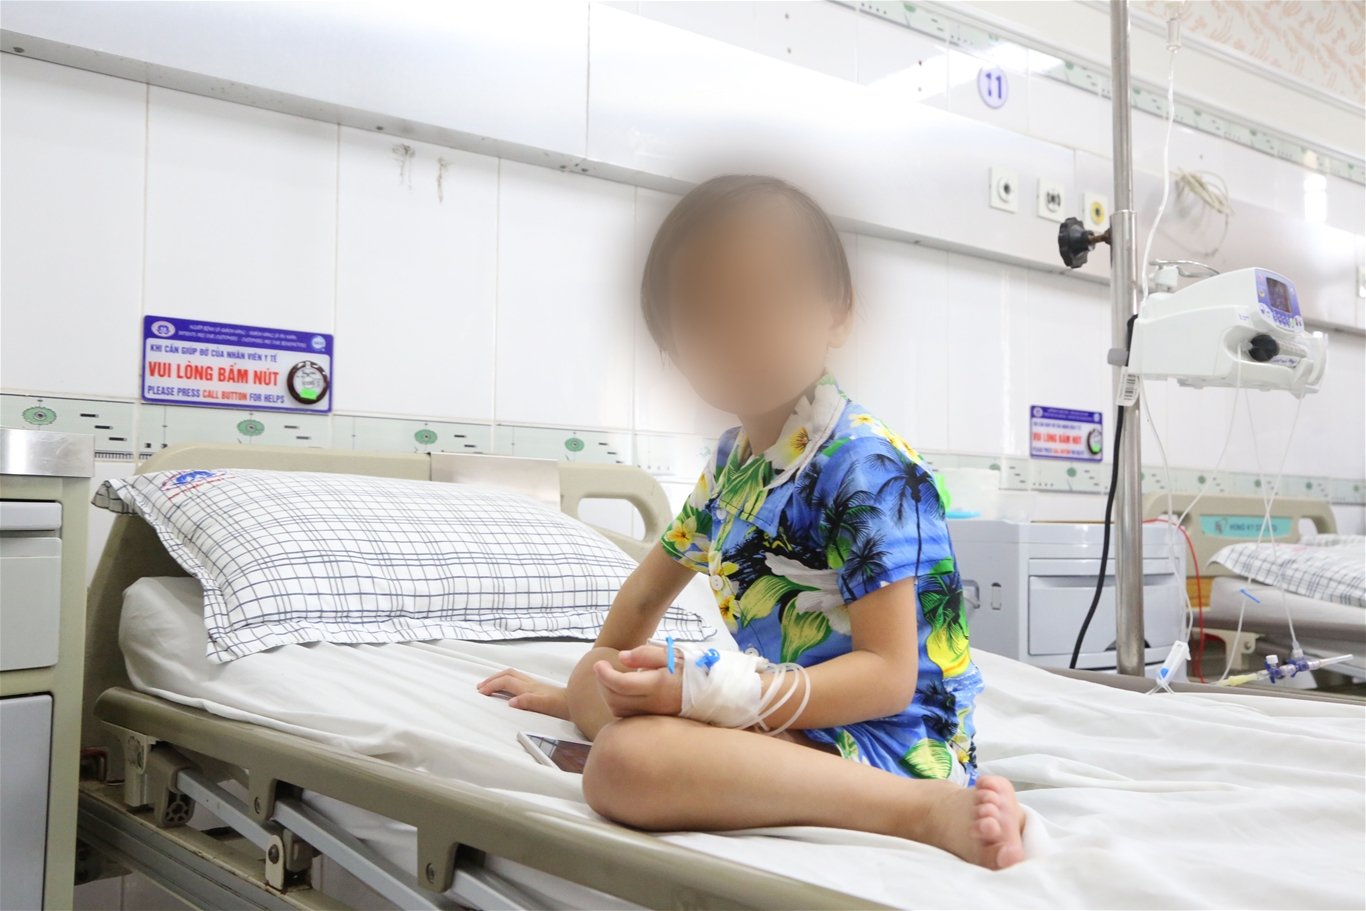 Bệnh viện Đa khoa tỉnh Phú Thọ phẫu thuật thành công cho một bệnh nhi  thông qua hội chẩn trực tuyến (Telehealth) với Bệnh viện Tim Hà Nội  3